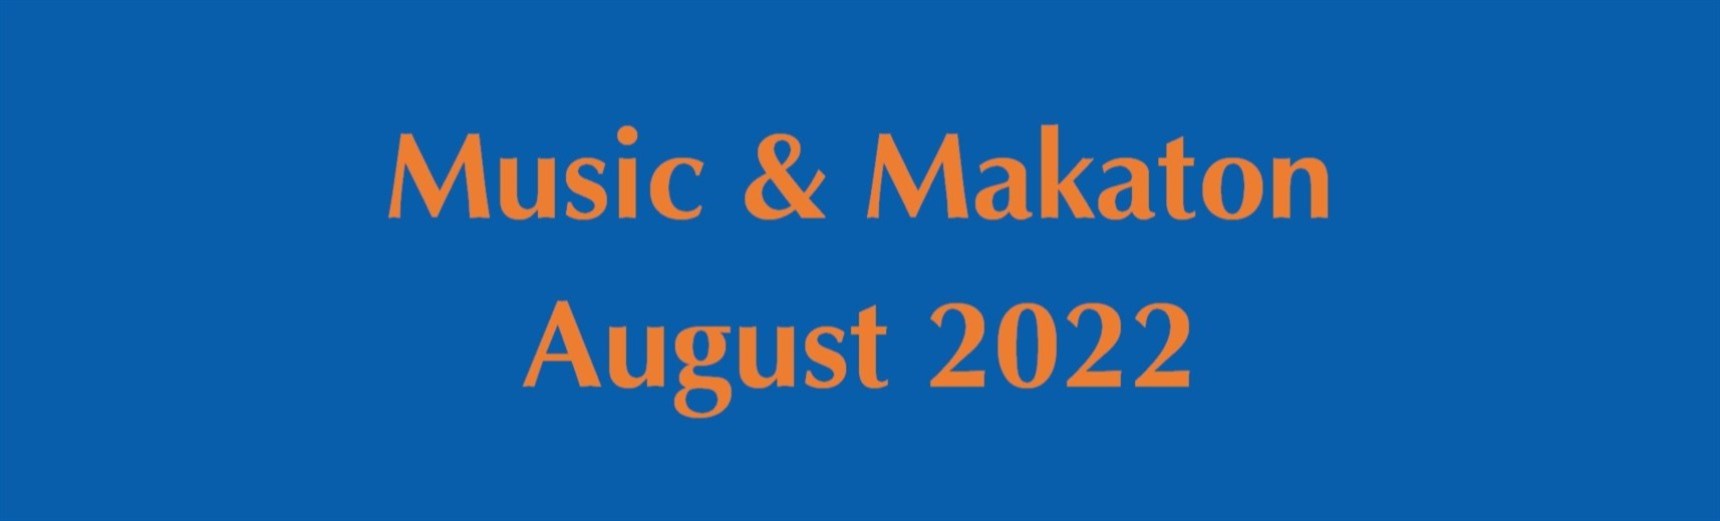 MusicMakaton-2022